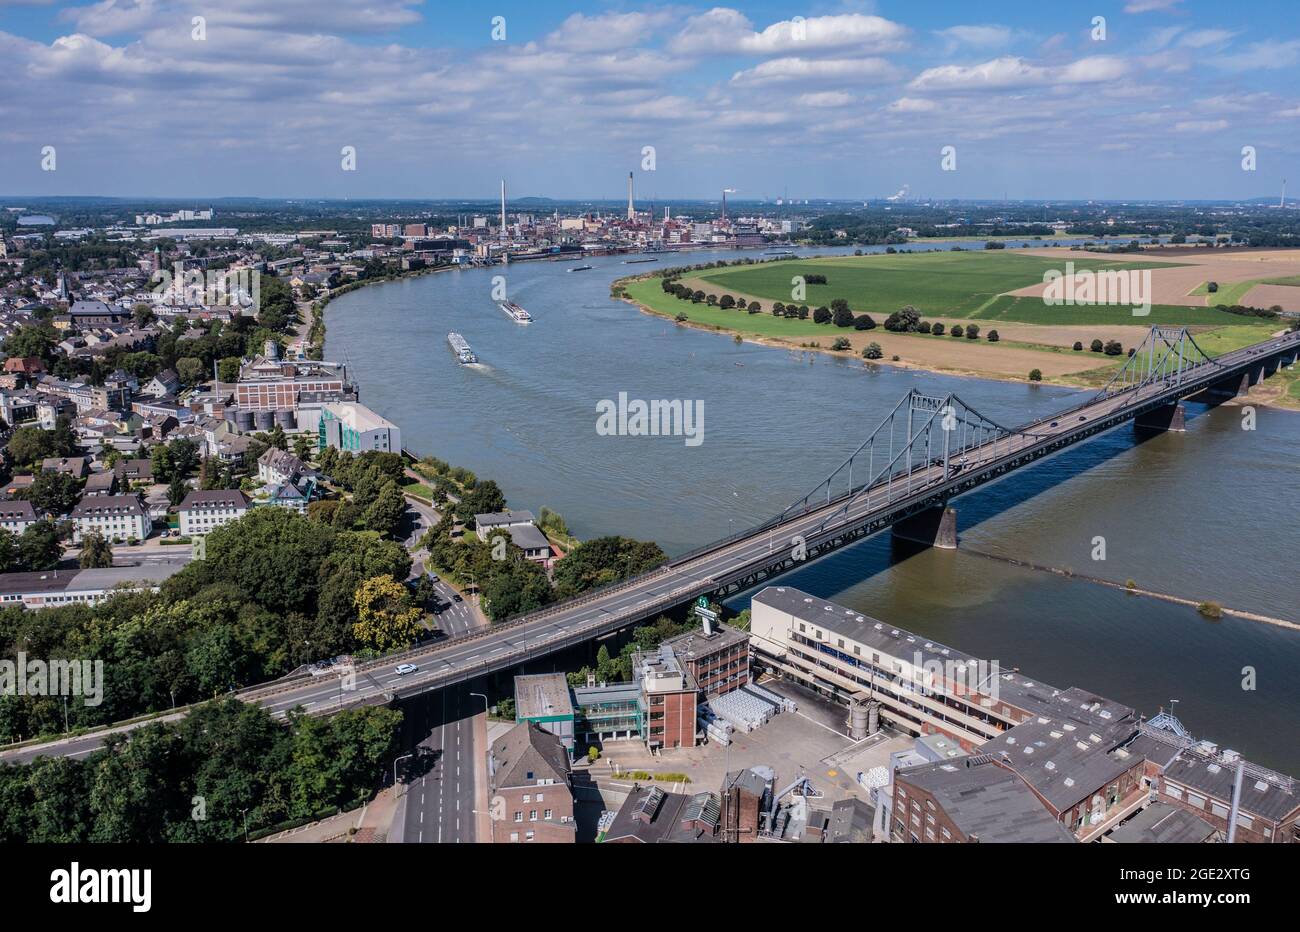 Rheinbrücke zwischen Krefeld Uerdingen und Duisburg mit der B244. Luftaufnahme von der Krefelder Seite her fotografiert Stock Photo